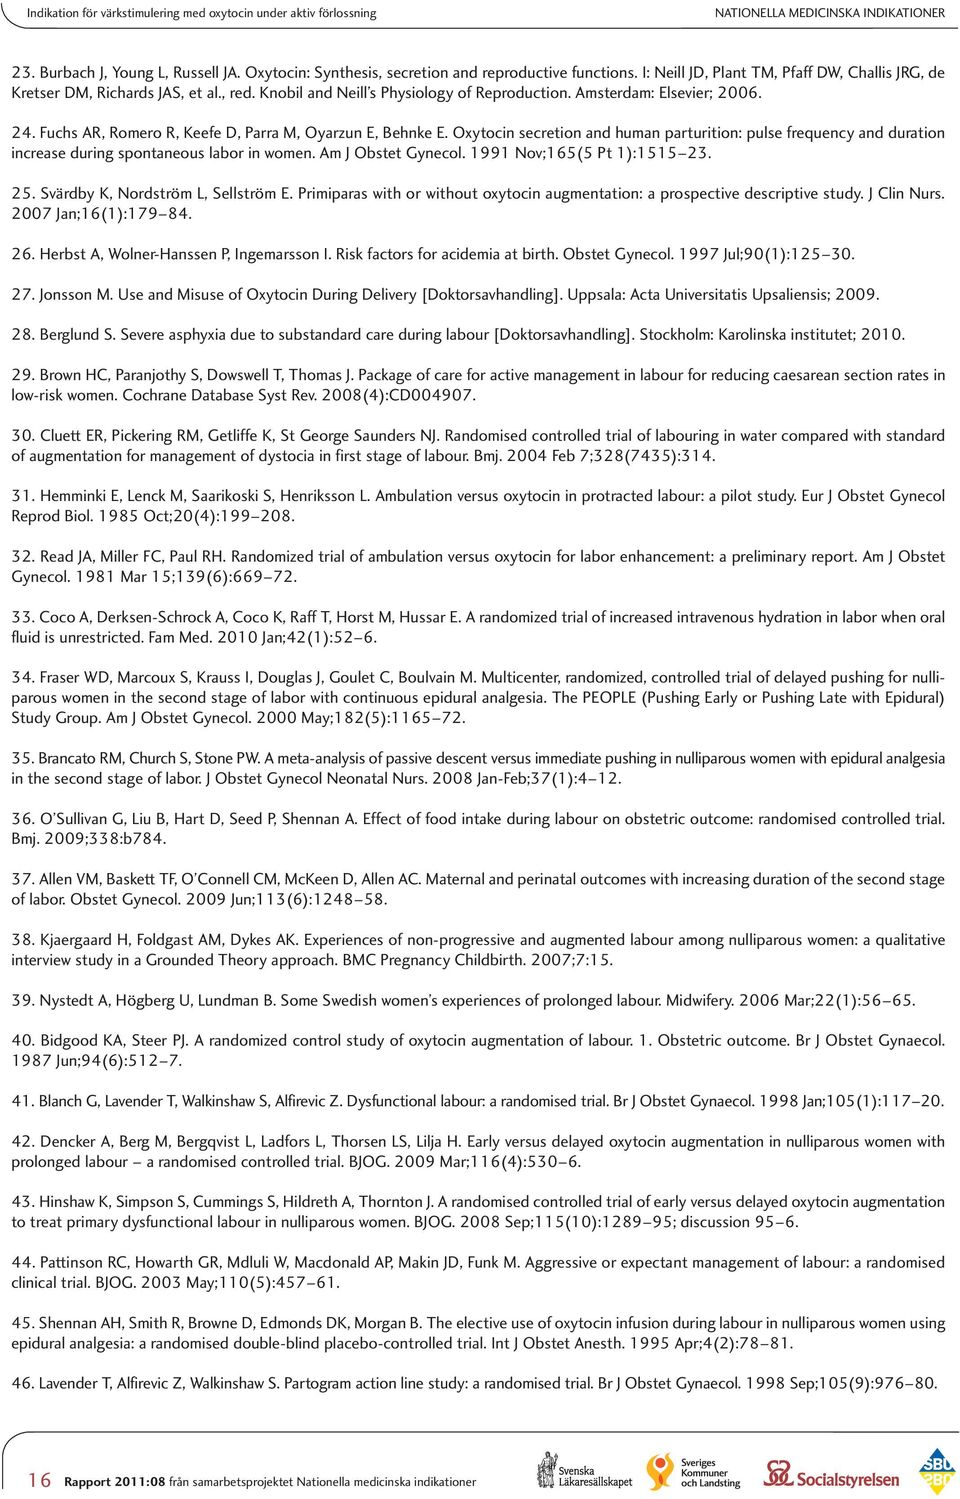 Statens beredning för medicinsk utvärdering; [hämtat 2011]; Webbadress: http://www.sbu.se/sv/evidensbaserad-vard/om-sbus-metodergranskning/sbus-granskningsmallar/. 50. Lavender T, Hart A, Smyth RM.